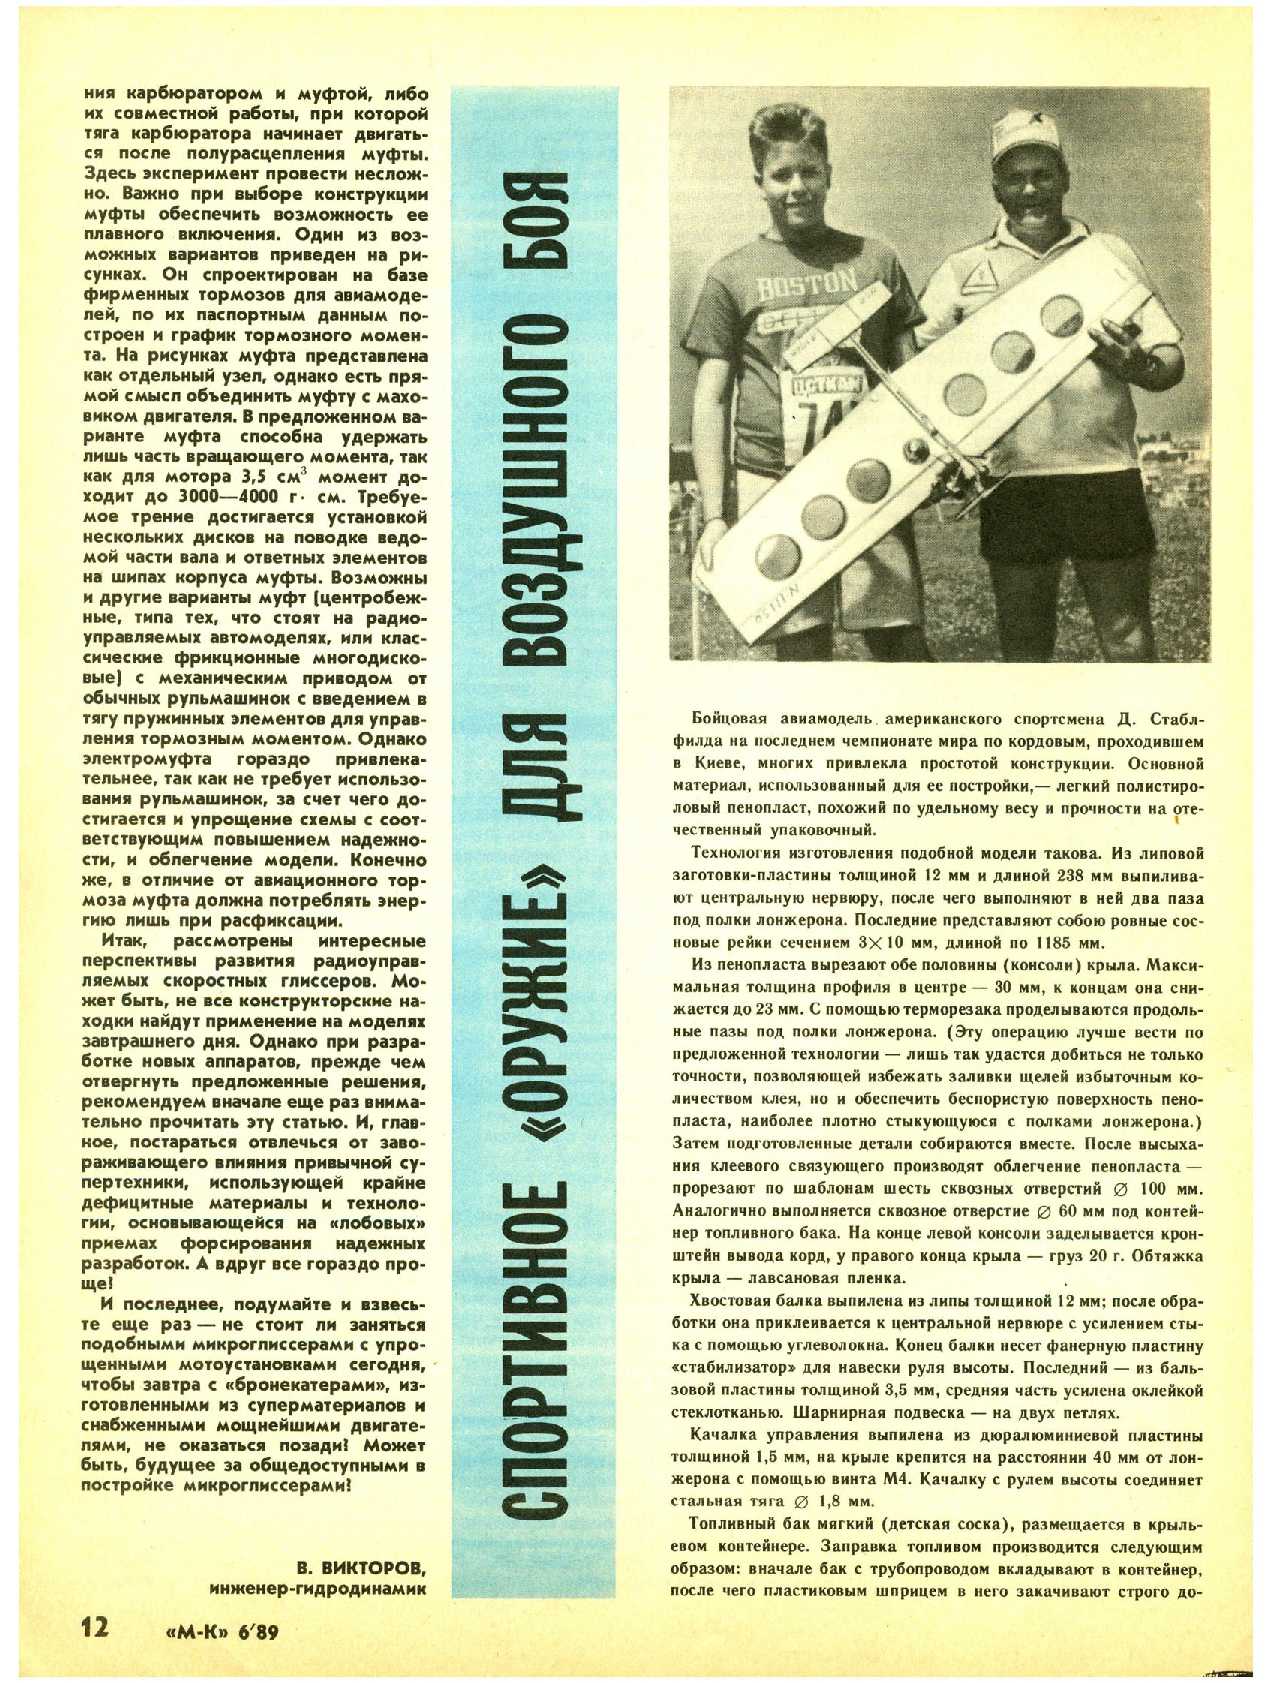 МК 6, 1989, 12 c.